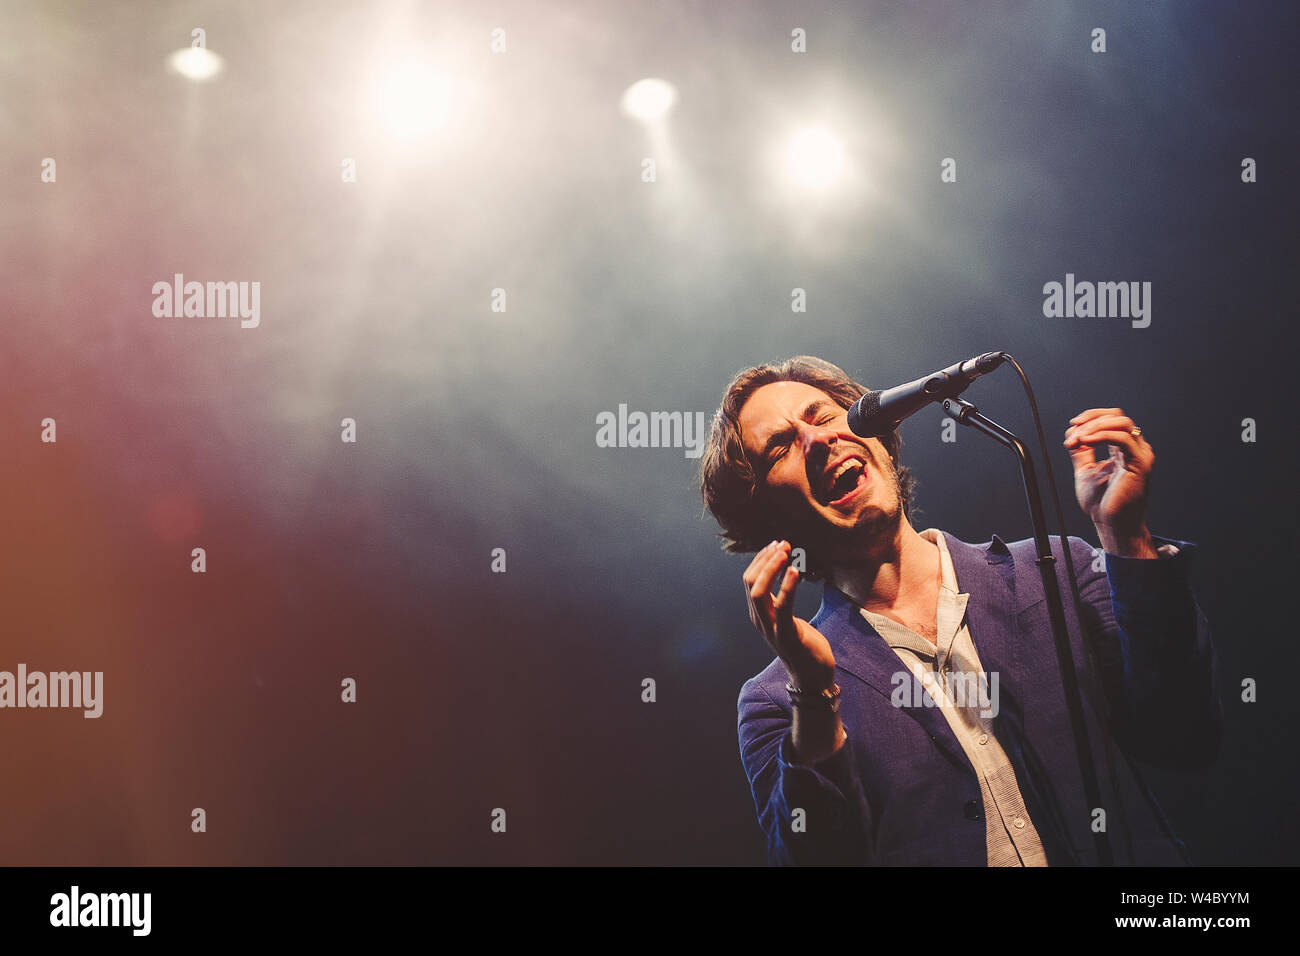 © Stefano D'Offizi - Jack Savoretti #live @ Atlantico - Roma - 2019 - www.relics-controsuoni.com Foto de stock